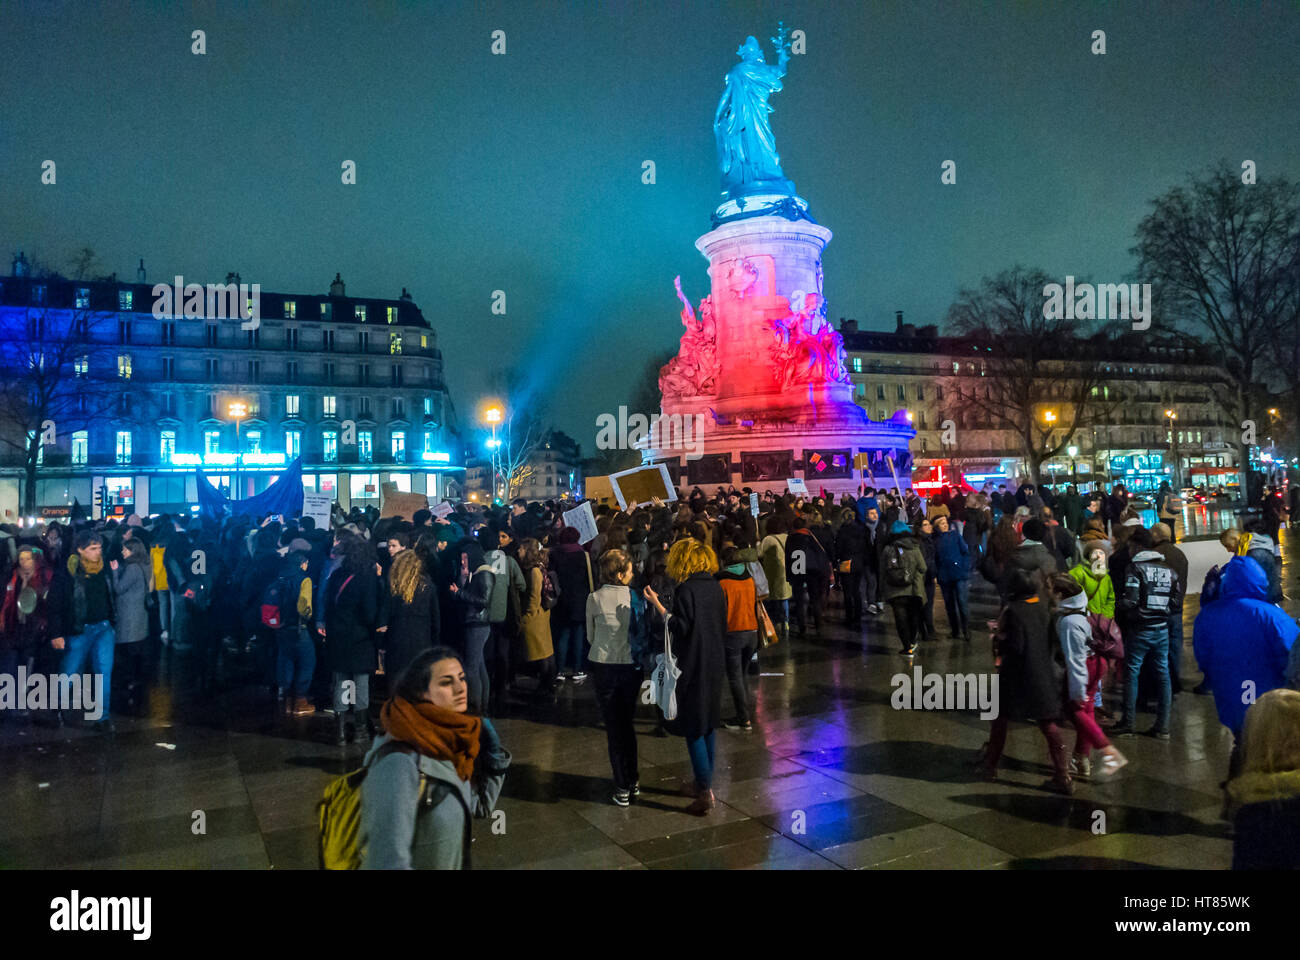 Paris, France.8 mars.Paris, France, manifestation, Journée internationale des droits des femmes, scène de foule de nuit, manifestation de nuit des femmes, protestation contre les droits des femmes, égalité des femmes, activisme des femmes Banque D'Images